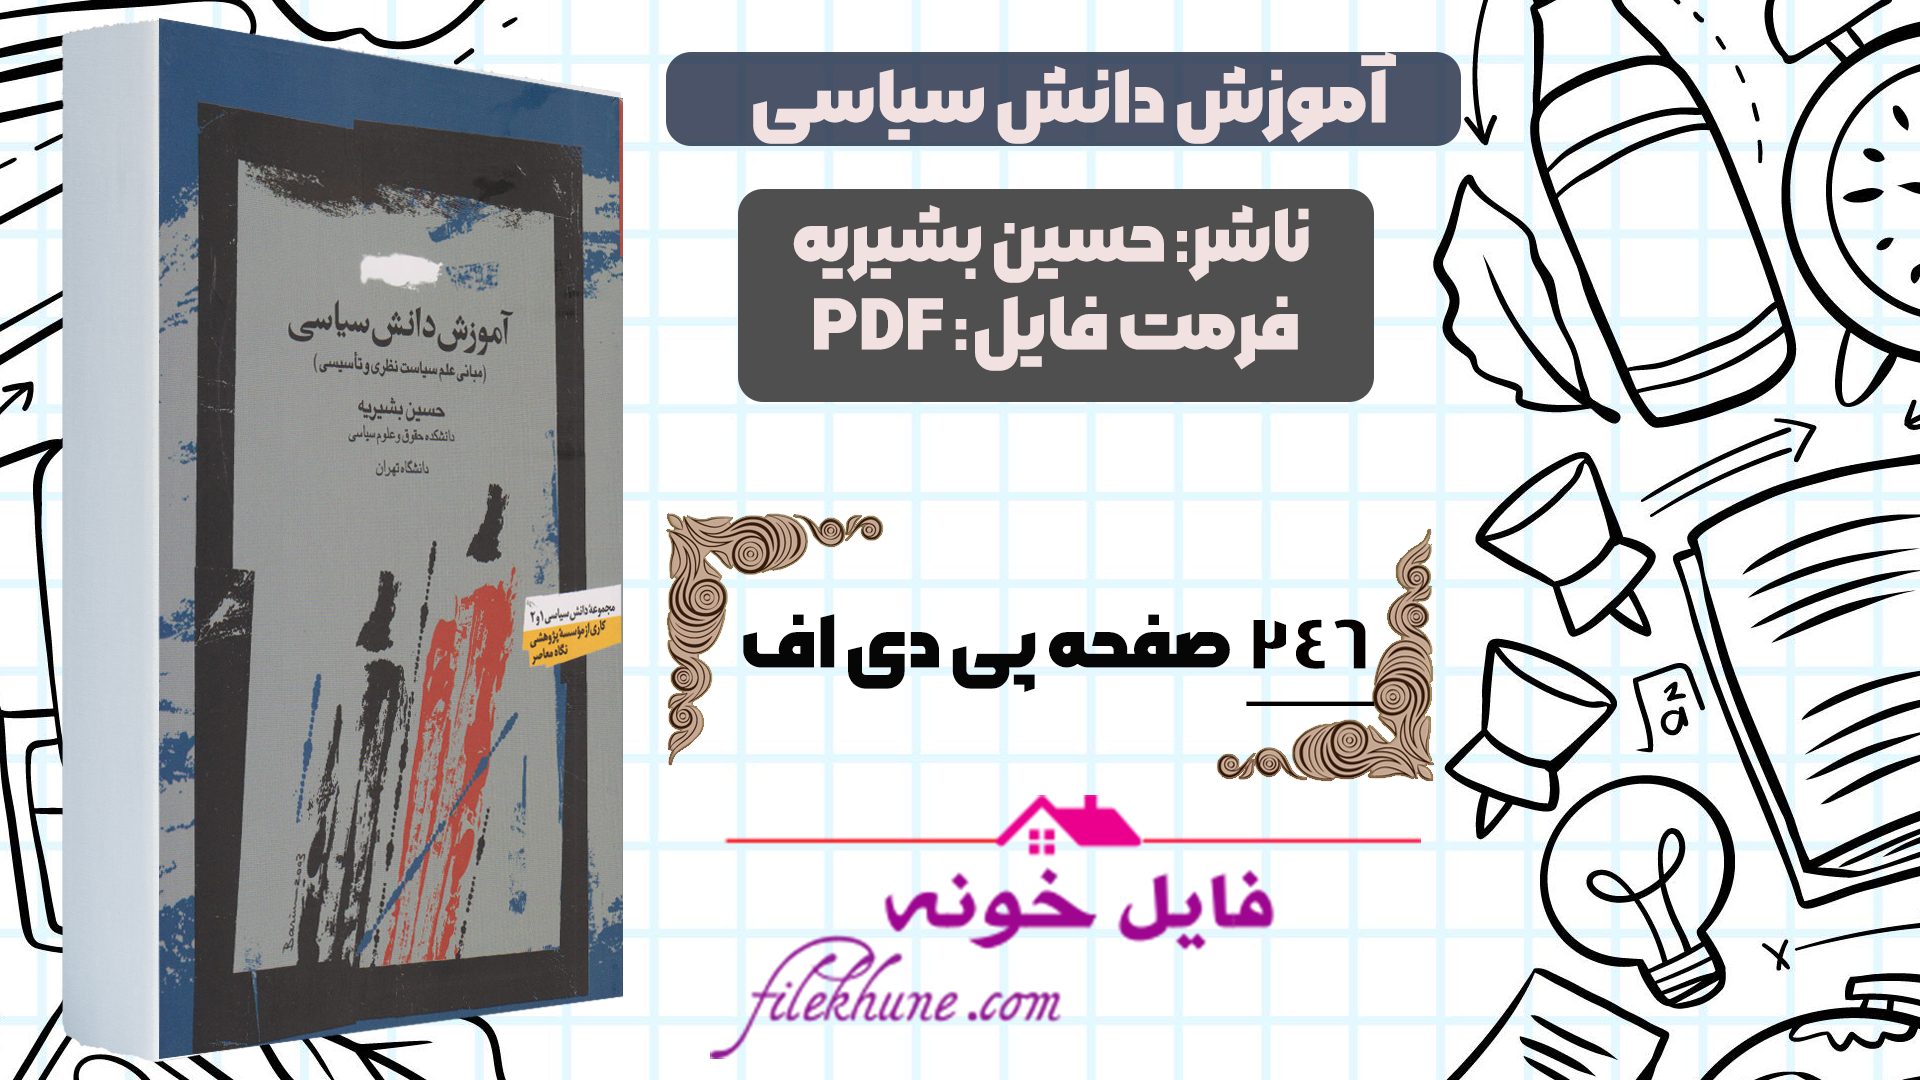 دانلود کتاب آموزش دانش سیاسی حسین بشیریه PDF